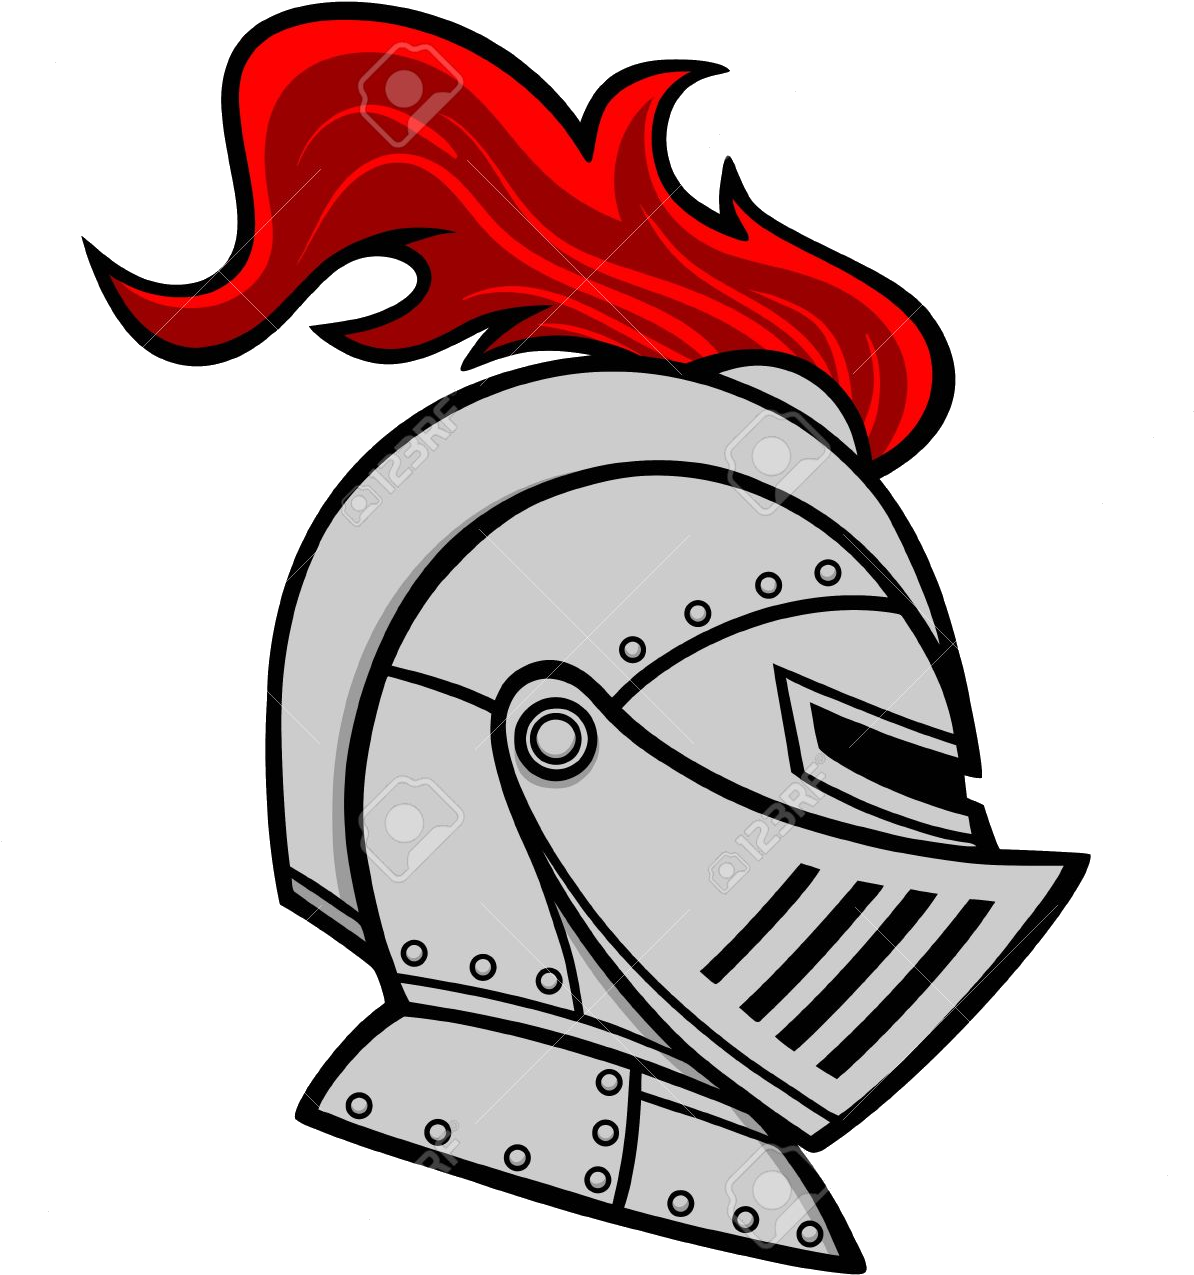 Flaming Knight Helmet Illustration